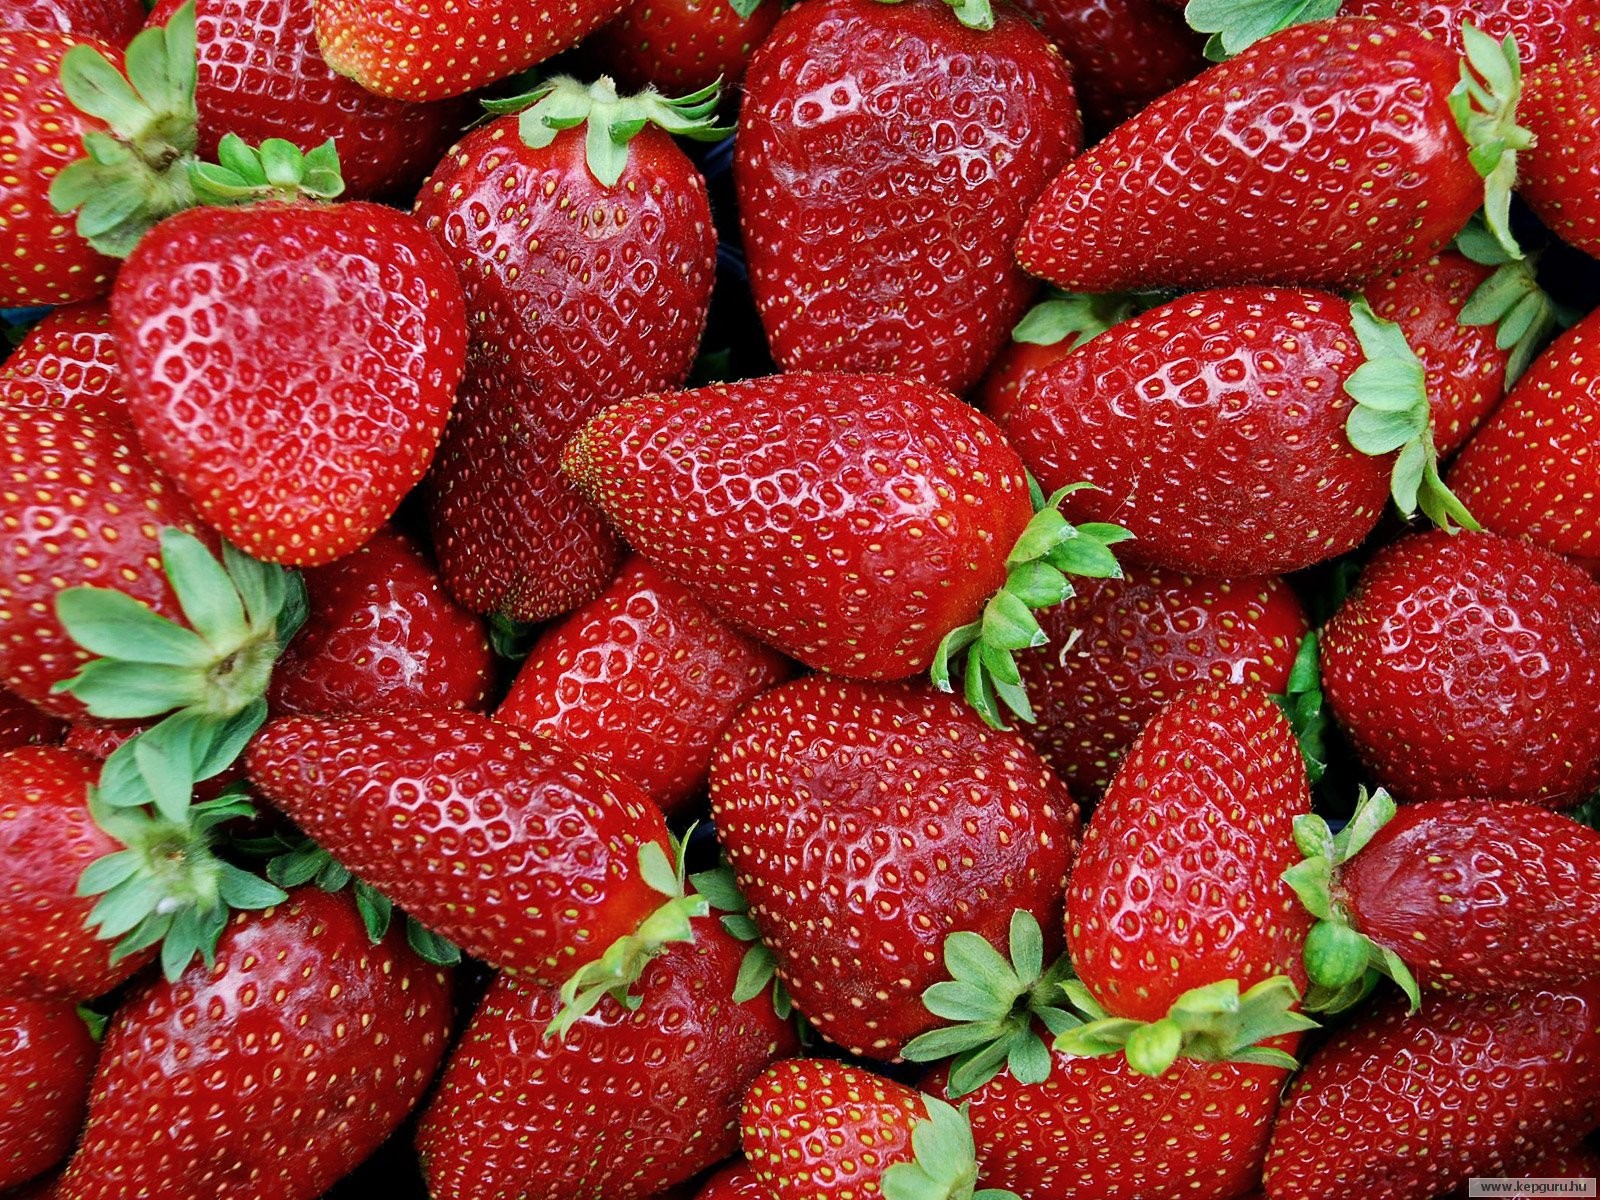 800x600 strawberries wallpaper 1024x768 strawberries wallpaper 1600x1200